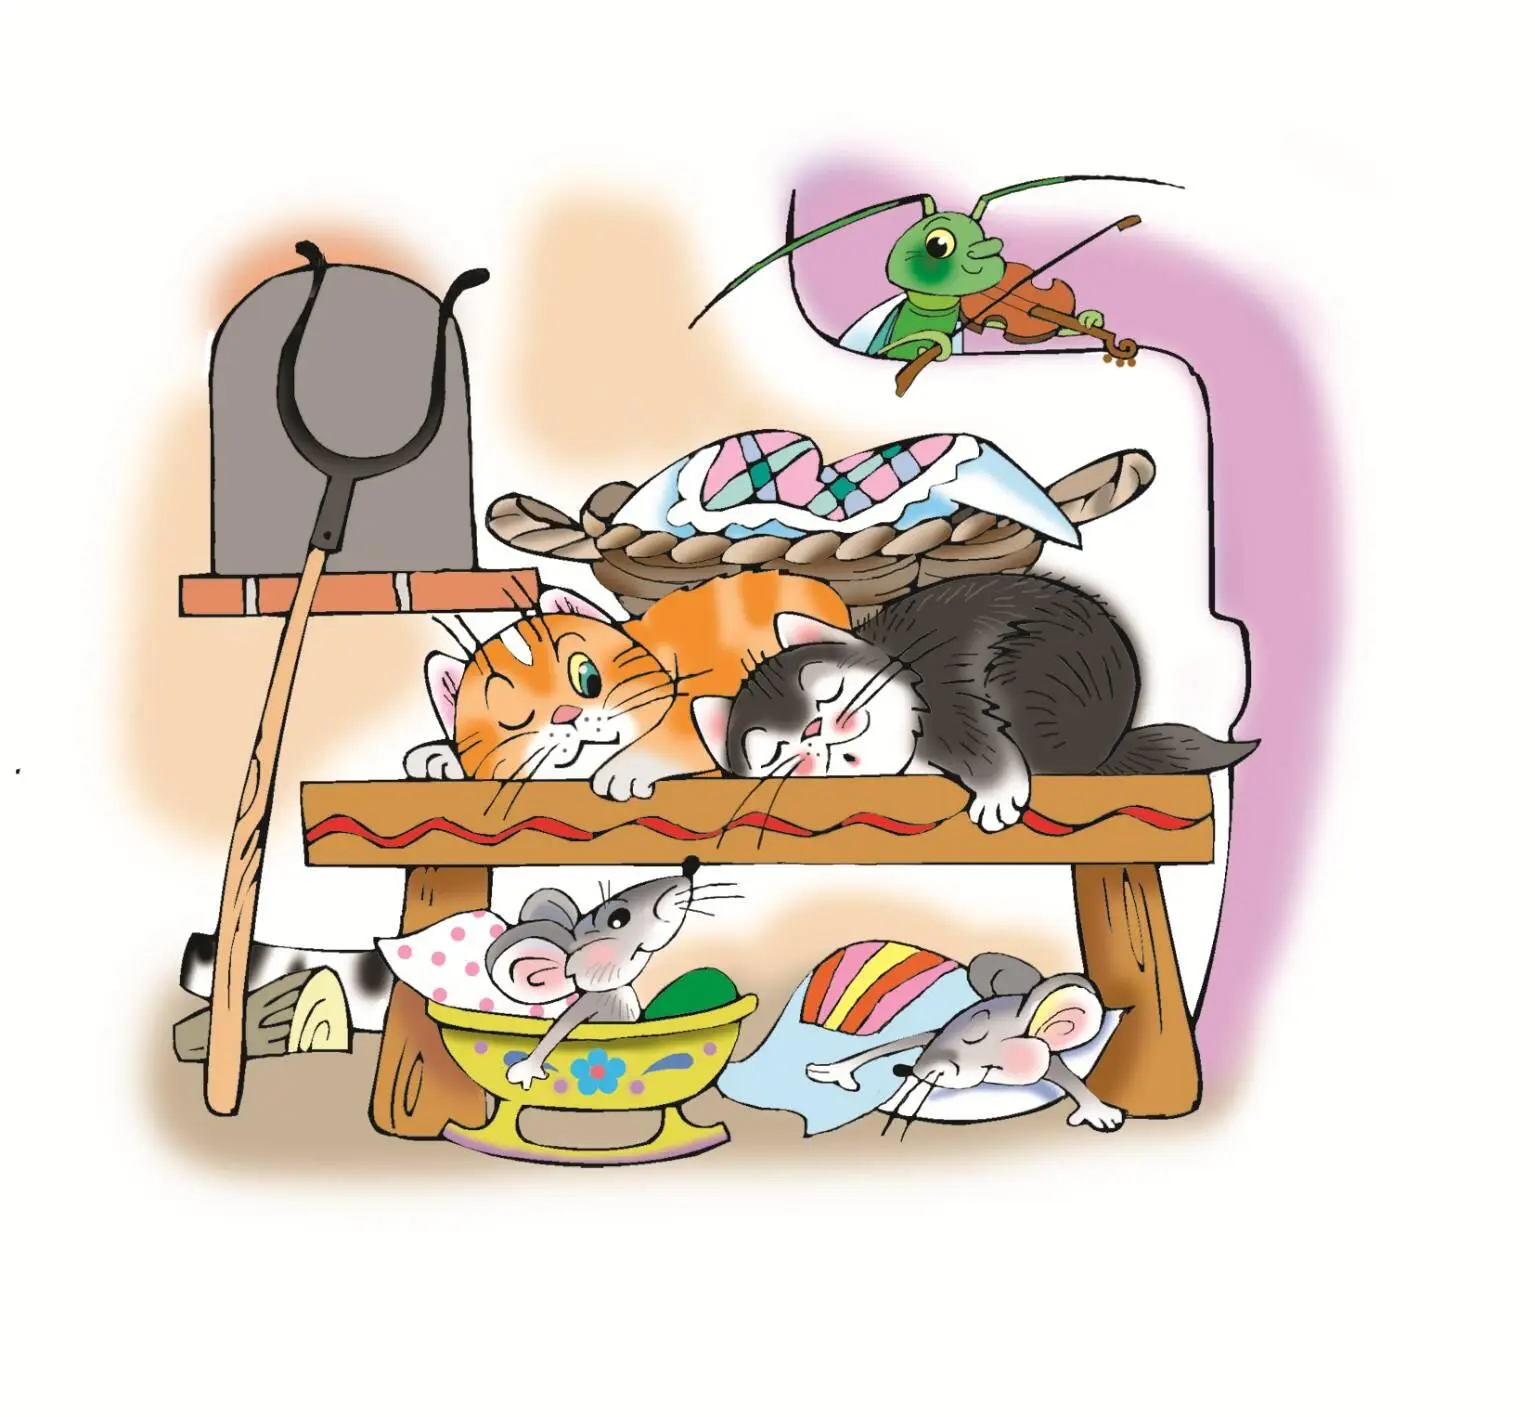 В нашем доме Спят под лавочкой мышата А на лавочке котята Дремлет в печке - фото 1